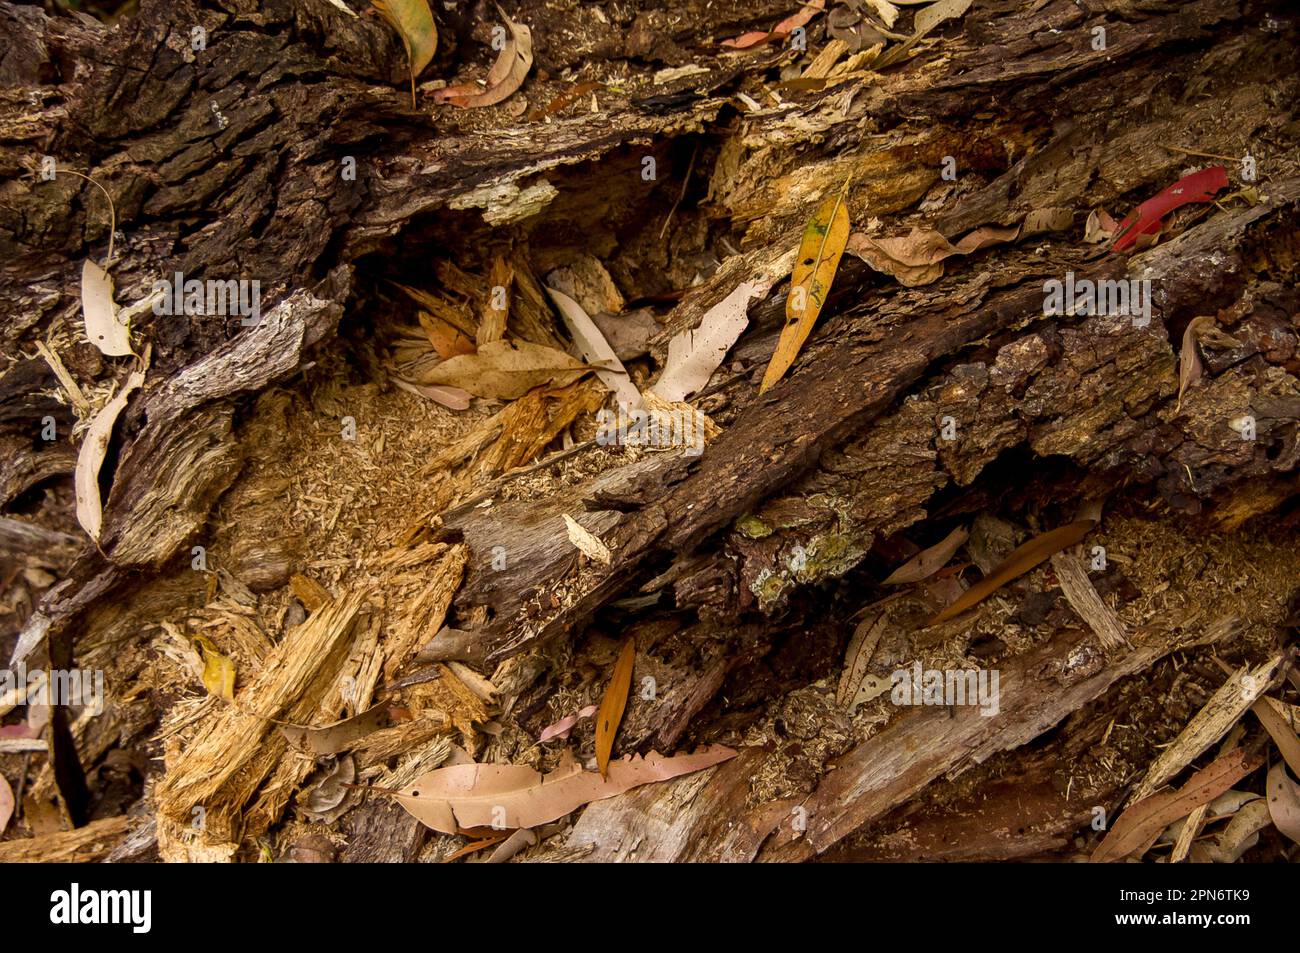 Débris organiques sur le sol de la forêt dans la forêt tropicale des basses terres australiennes dans le Queensland. L'écorce, les feuilles, le bois pourri forment une couche épaisse. Banque D'Images